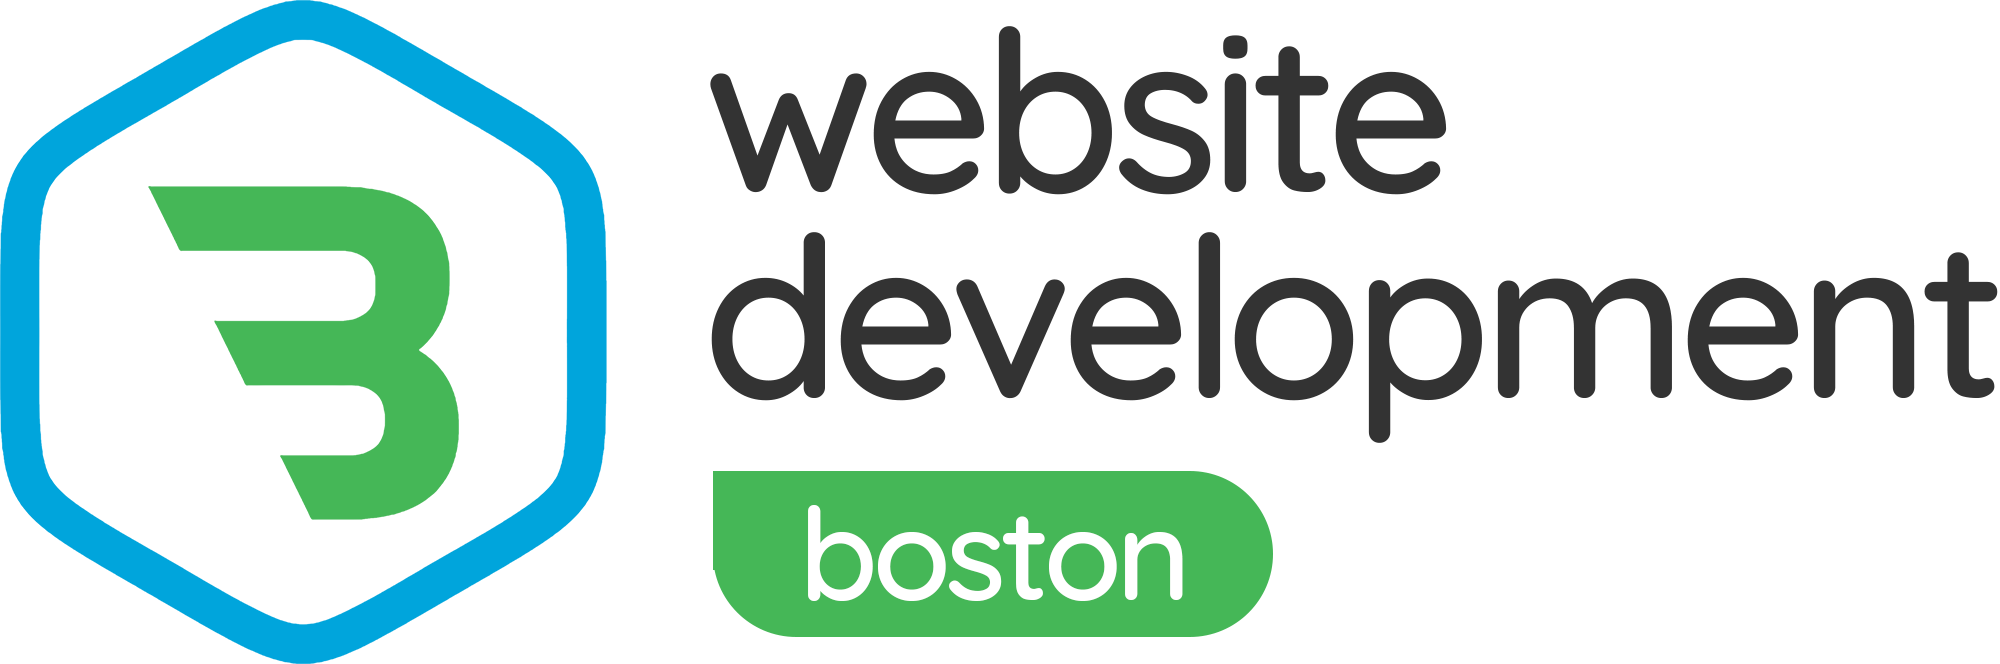 Boston-logo